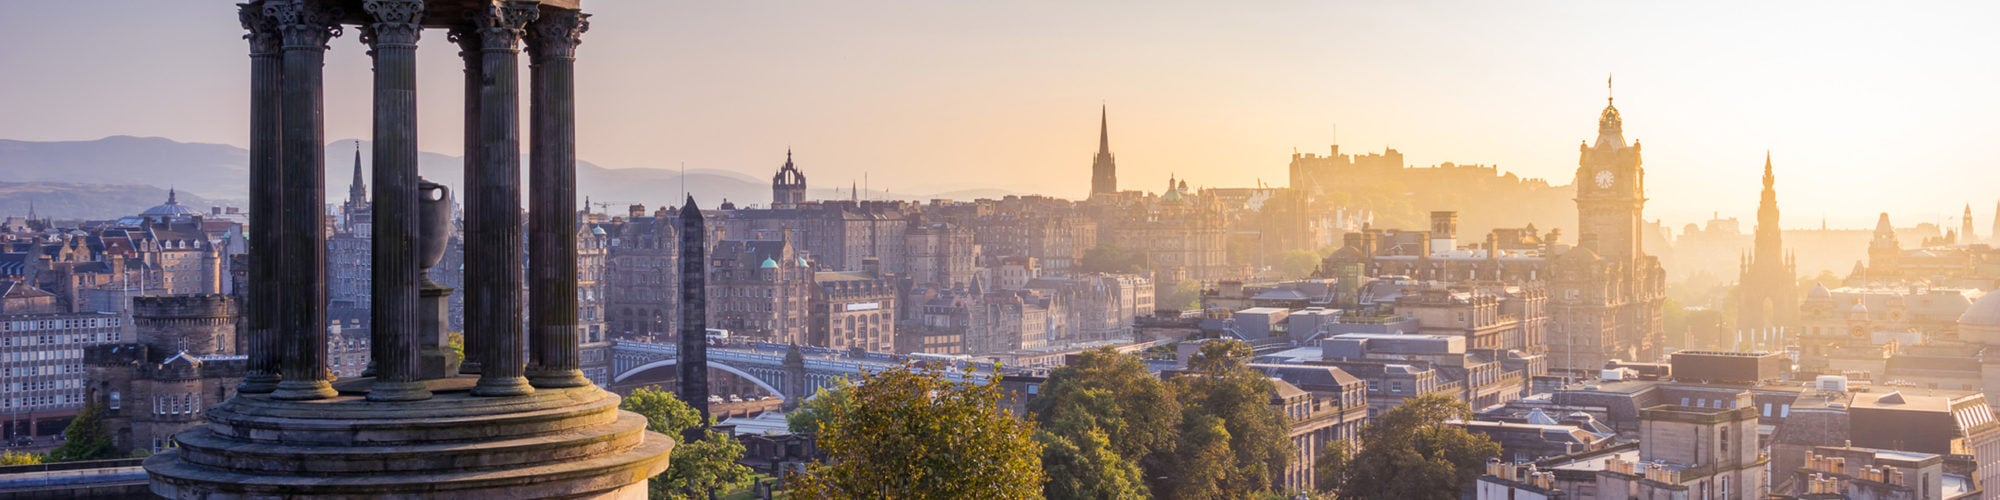 Edinburgh travel agents packages deals